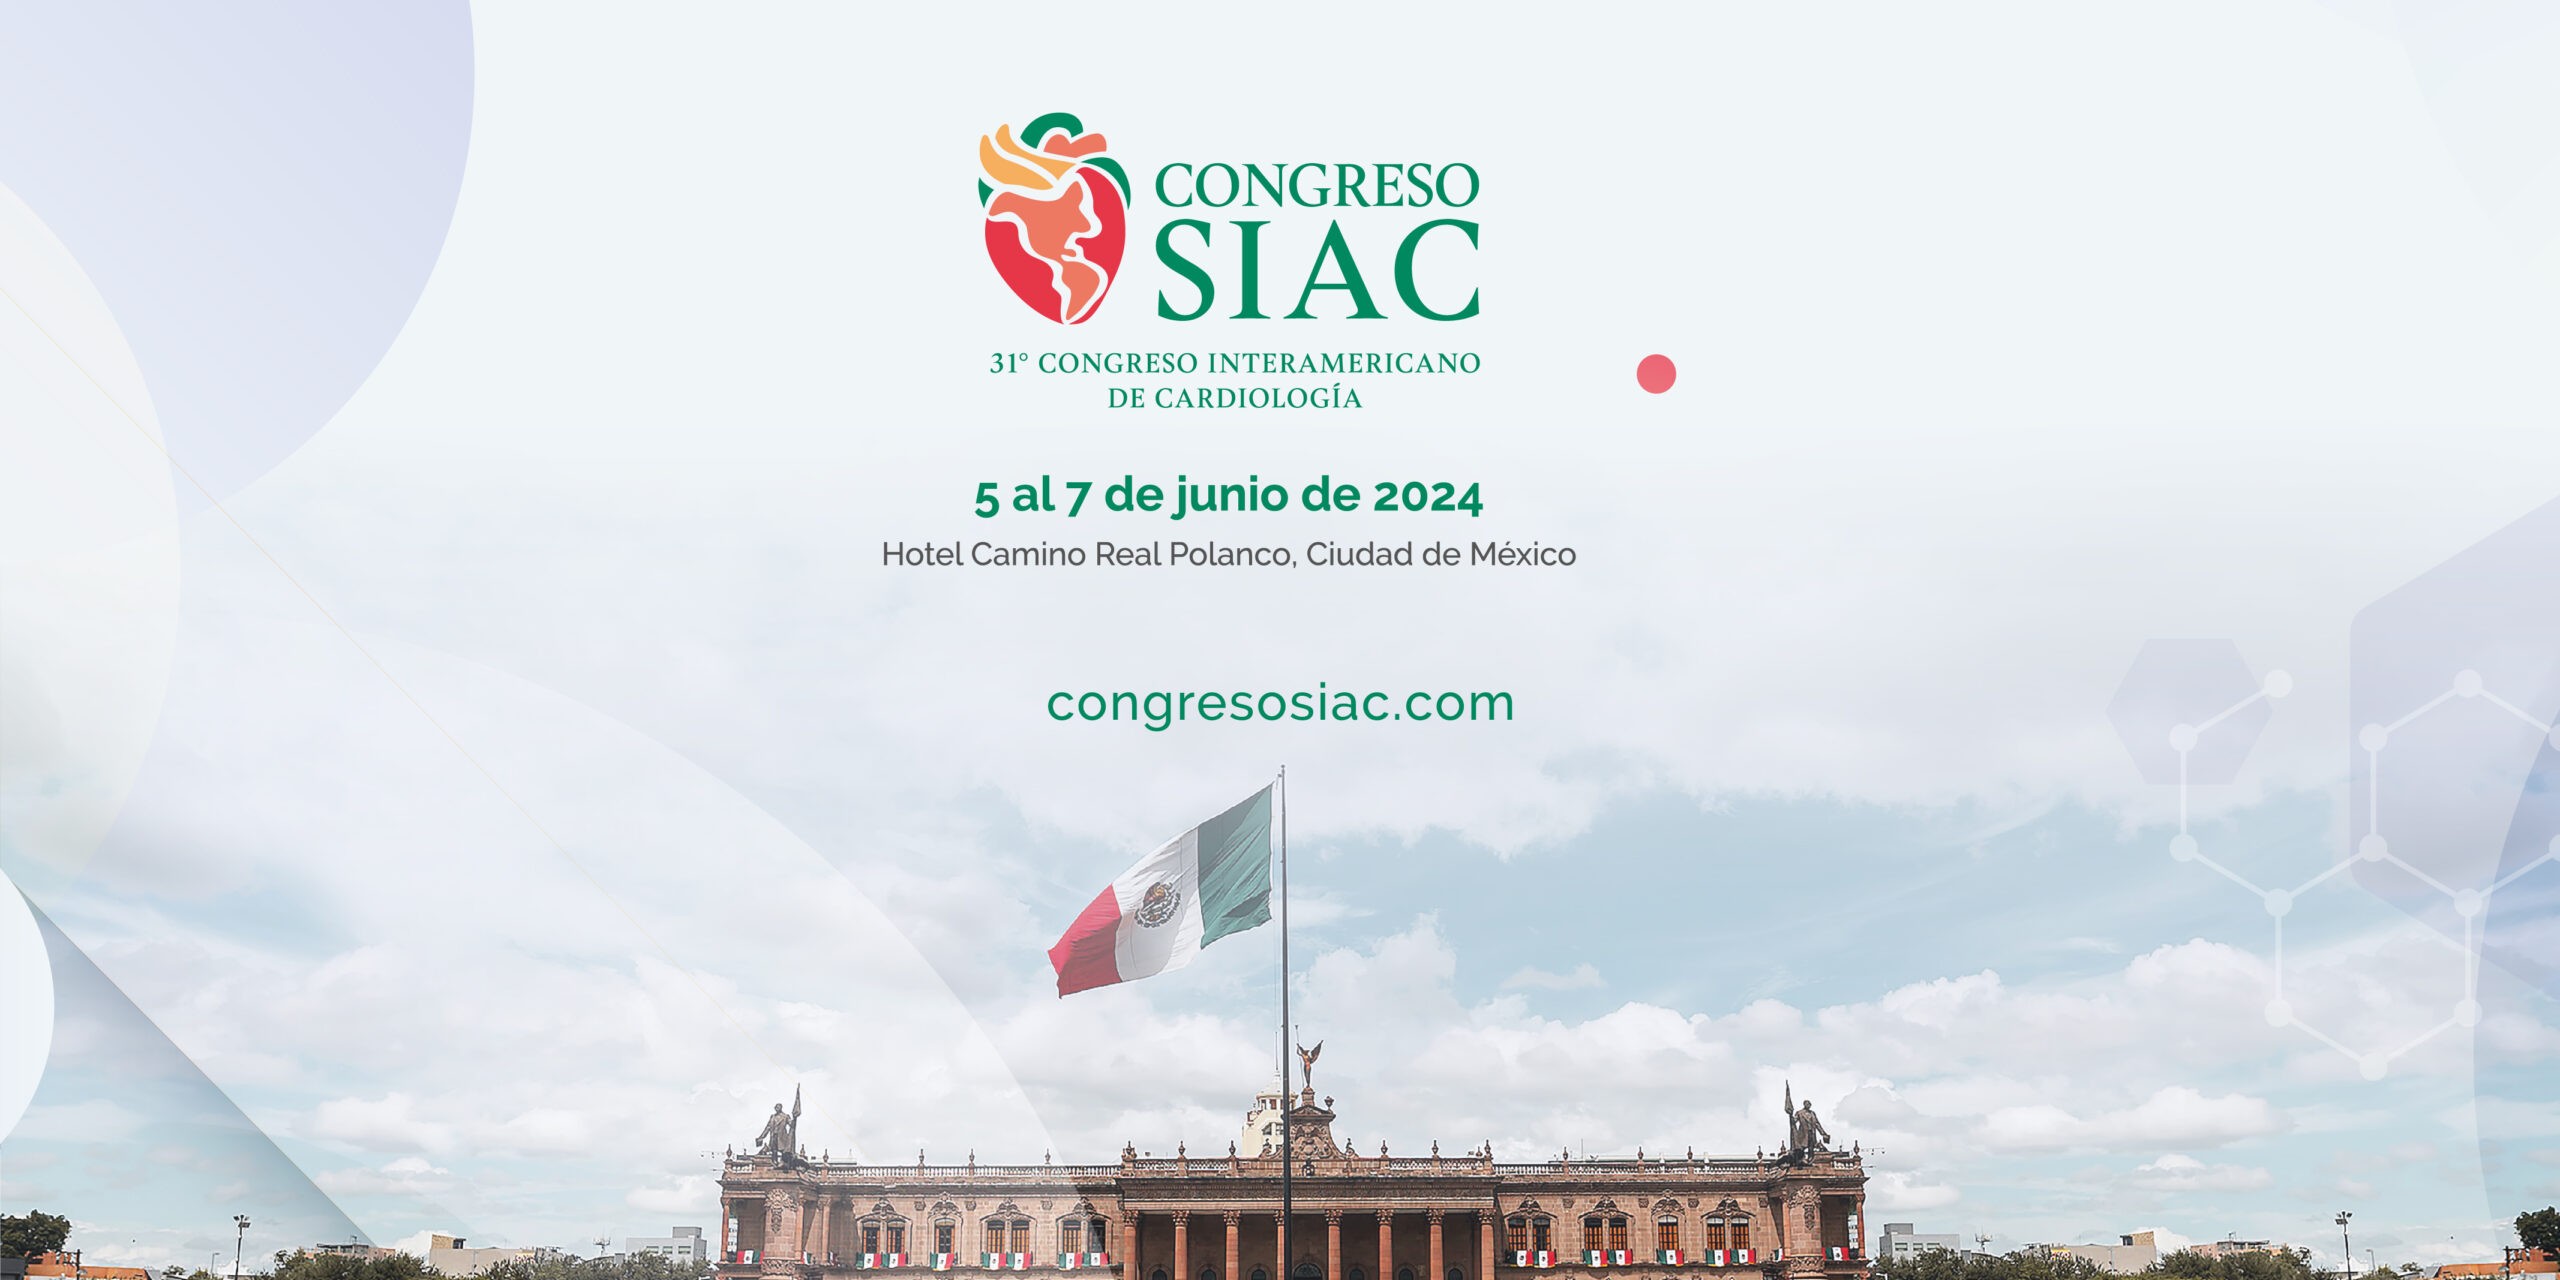 Congreso SIAC 2024